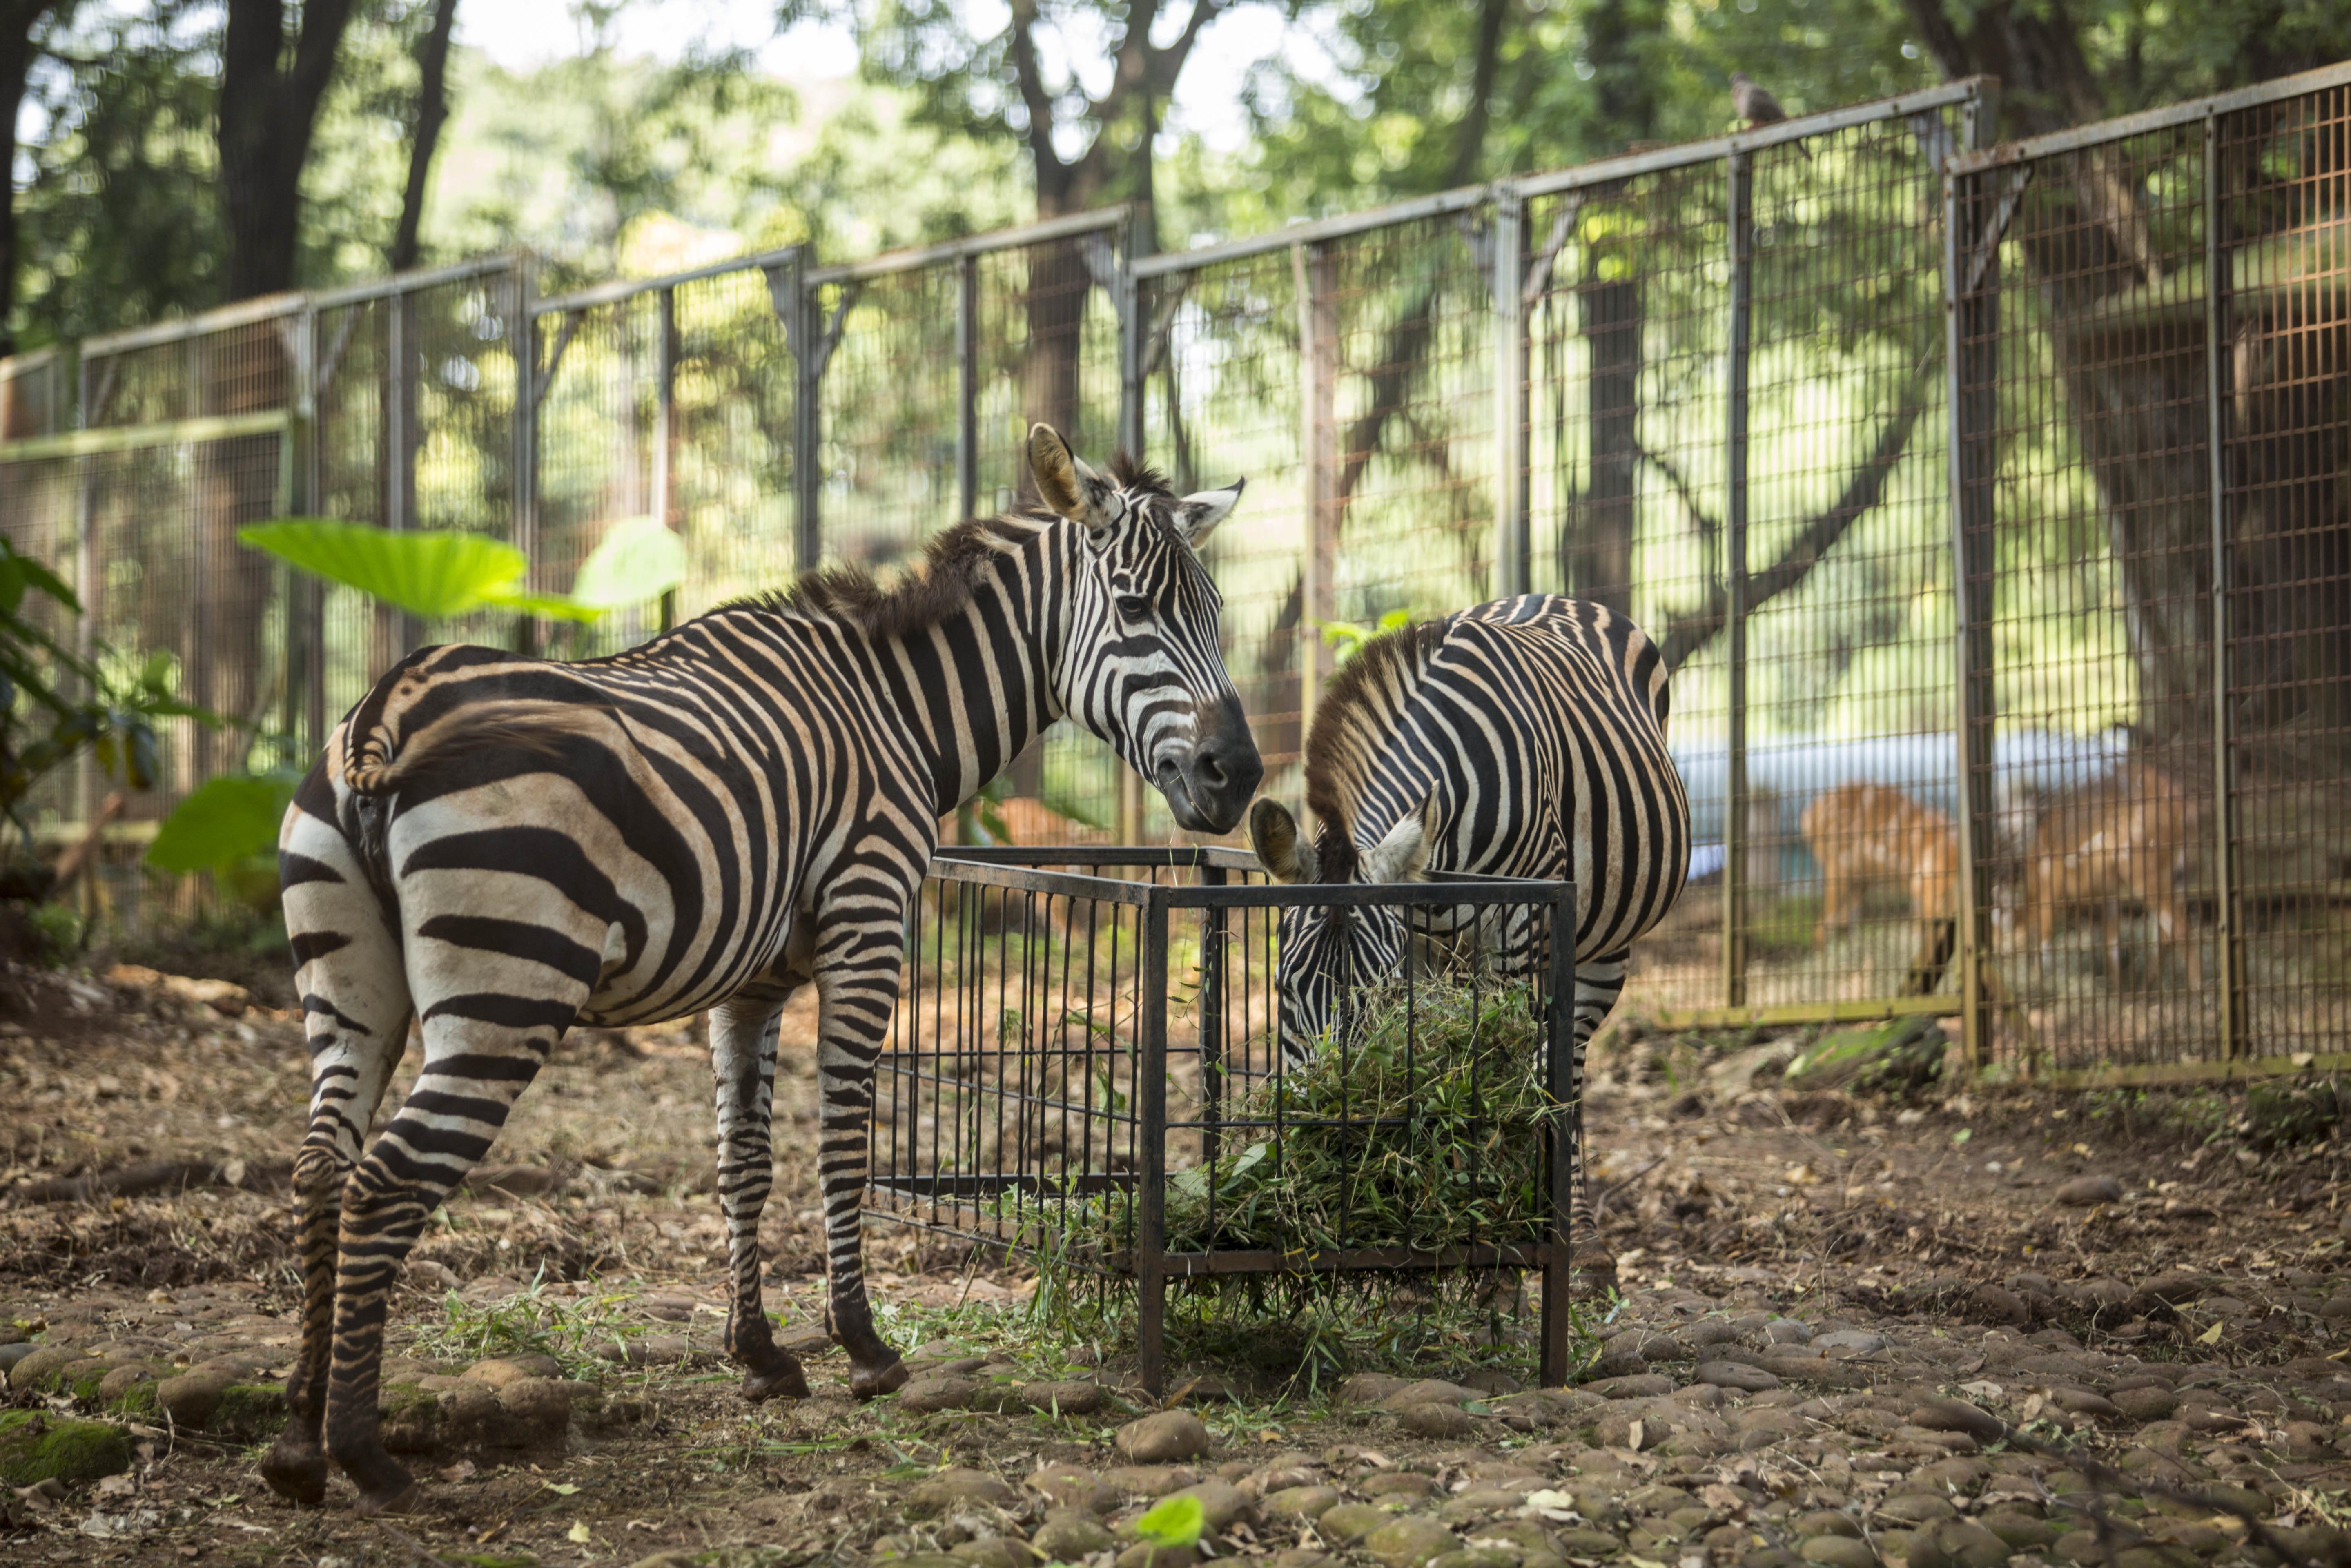 Zebra di Taman Margasatwa Ragunan, Jakarta Selatan (22/4/2020). Satwa-satwa di Taman Margasatwa Ragunan terlihat lebih tenang dan fresh sejak penutupan lokasi mulai 14 Maret untuk mencegah penyebaran virus corona COVID-19.